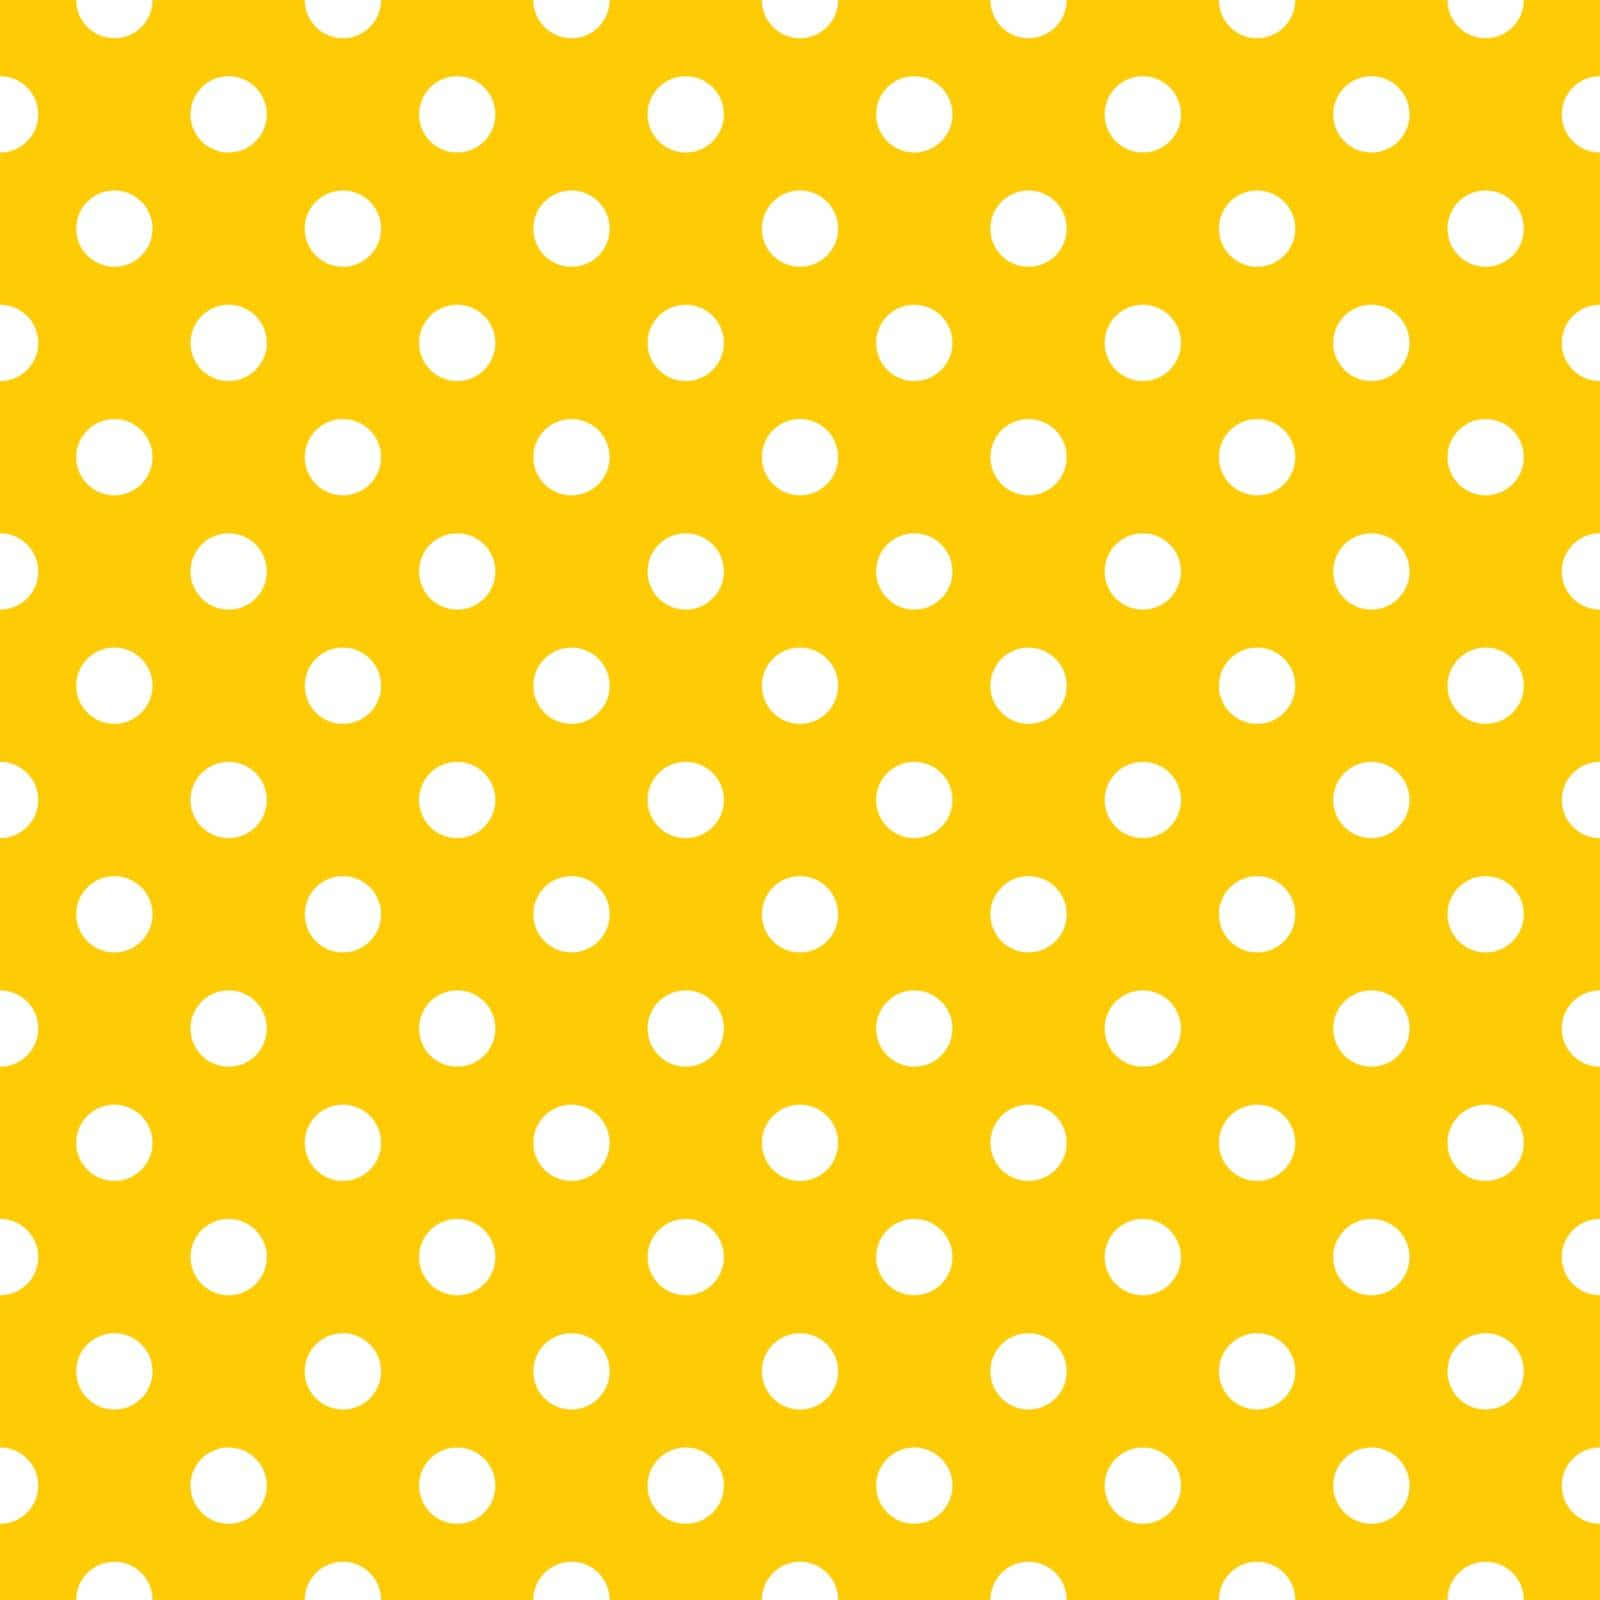 A Vibrant Yellow Polka Dot Pattern Wallpaper